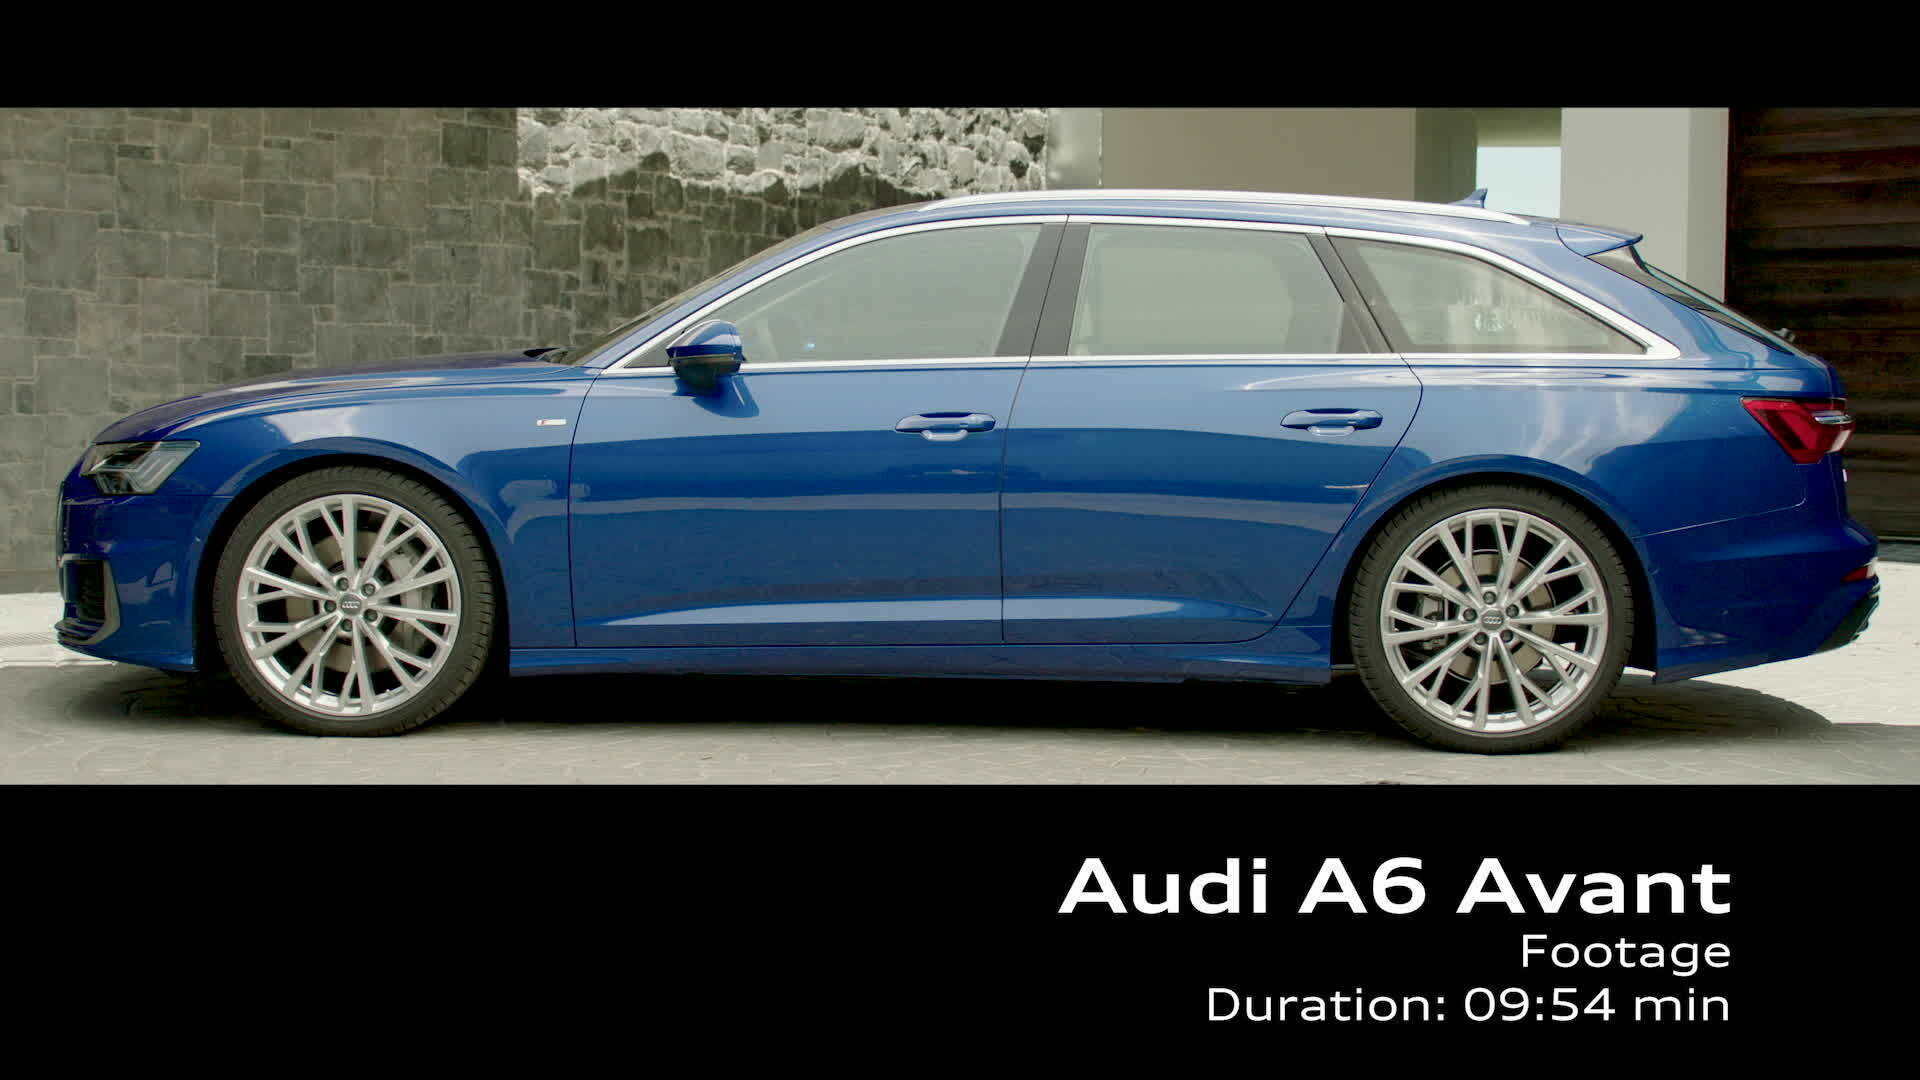 Audi A6 Avant Footage